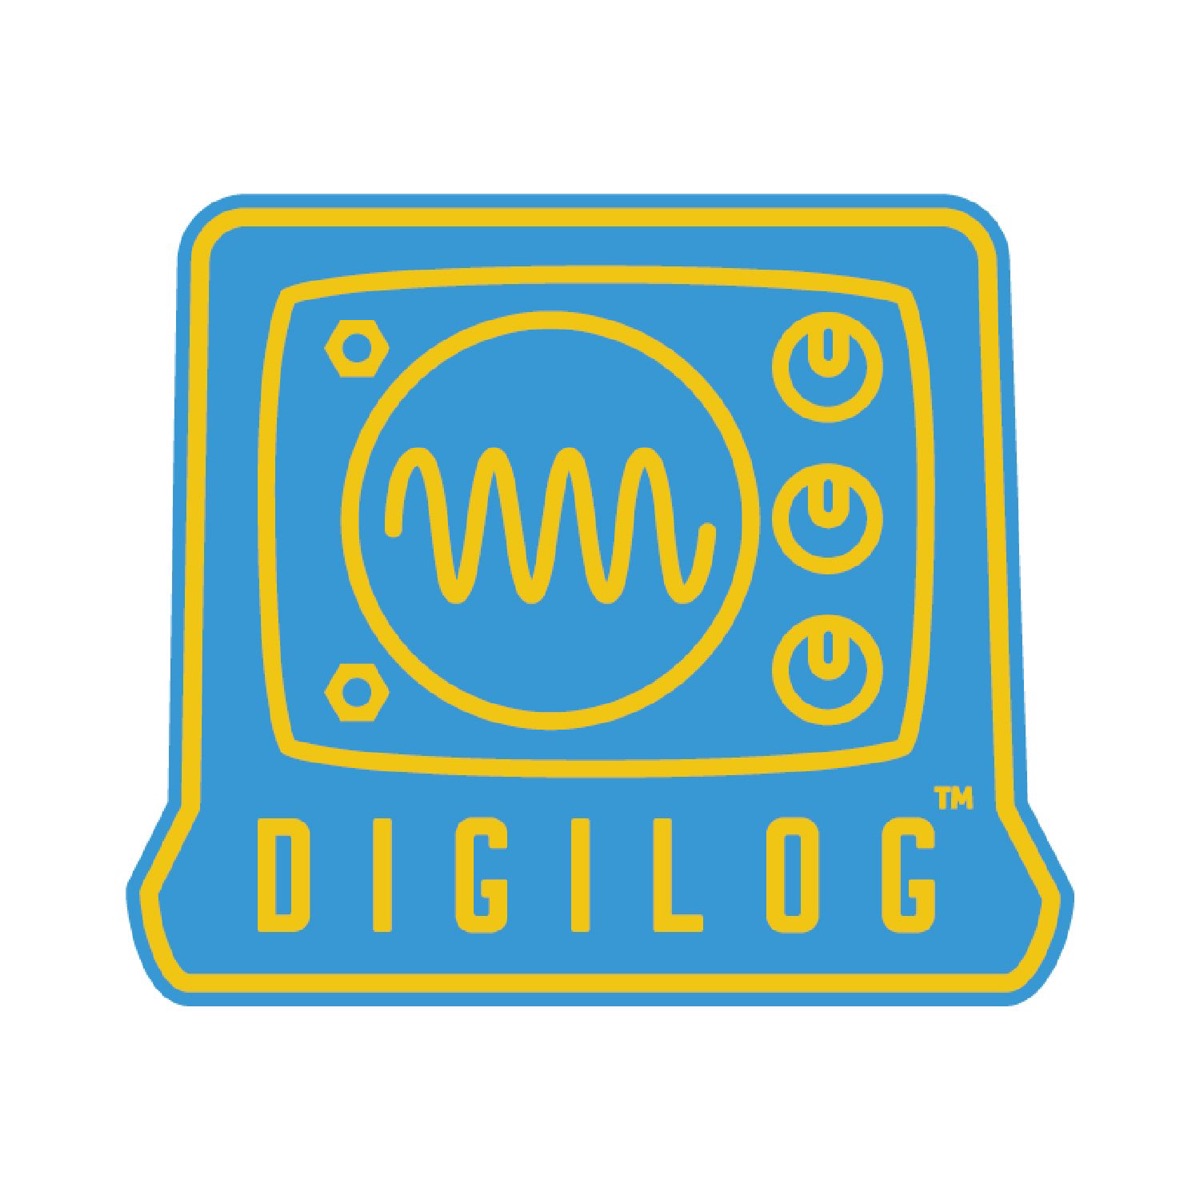 音仔人ep3 環境 舒壓與睡眠音樂的歪樓意見指南 Digilog Podcast Podtail